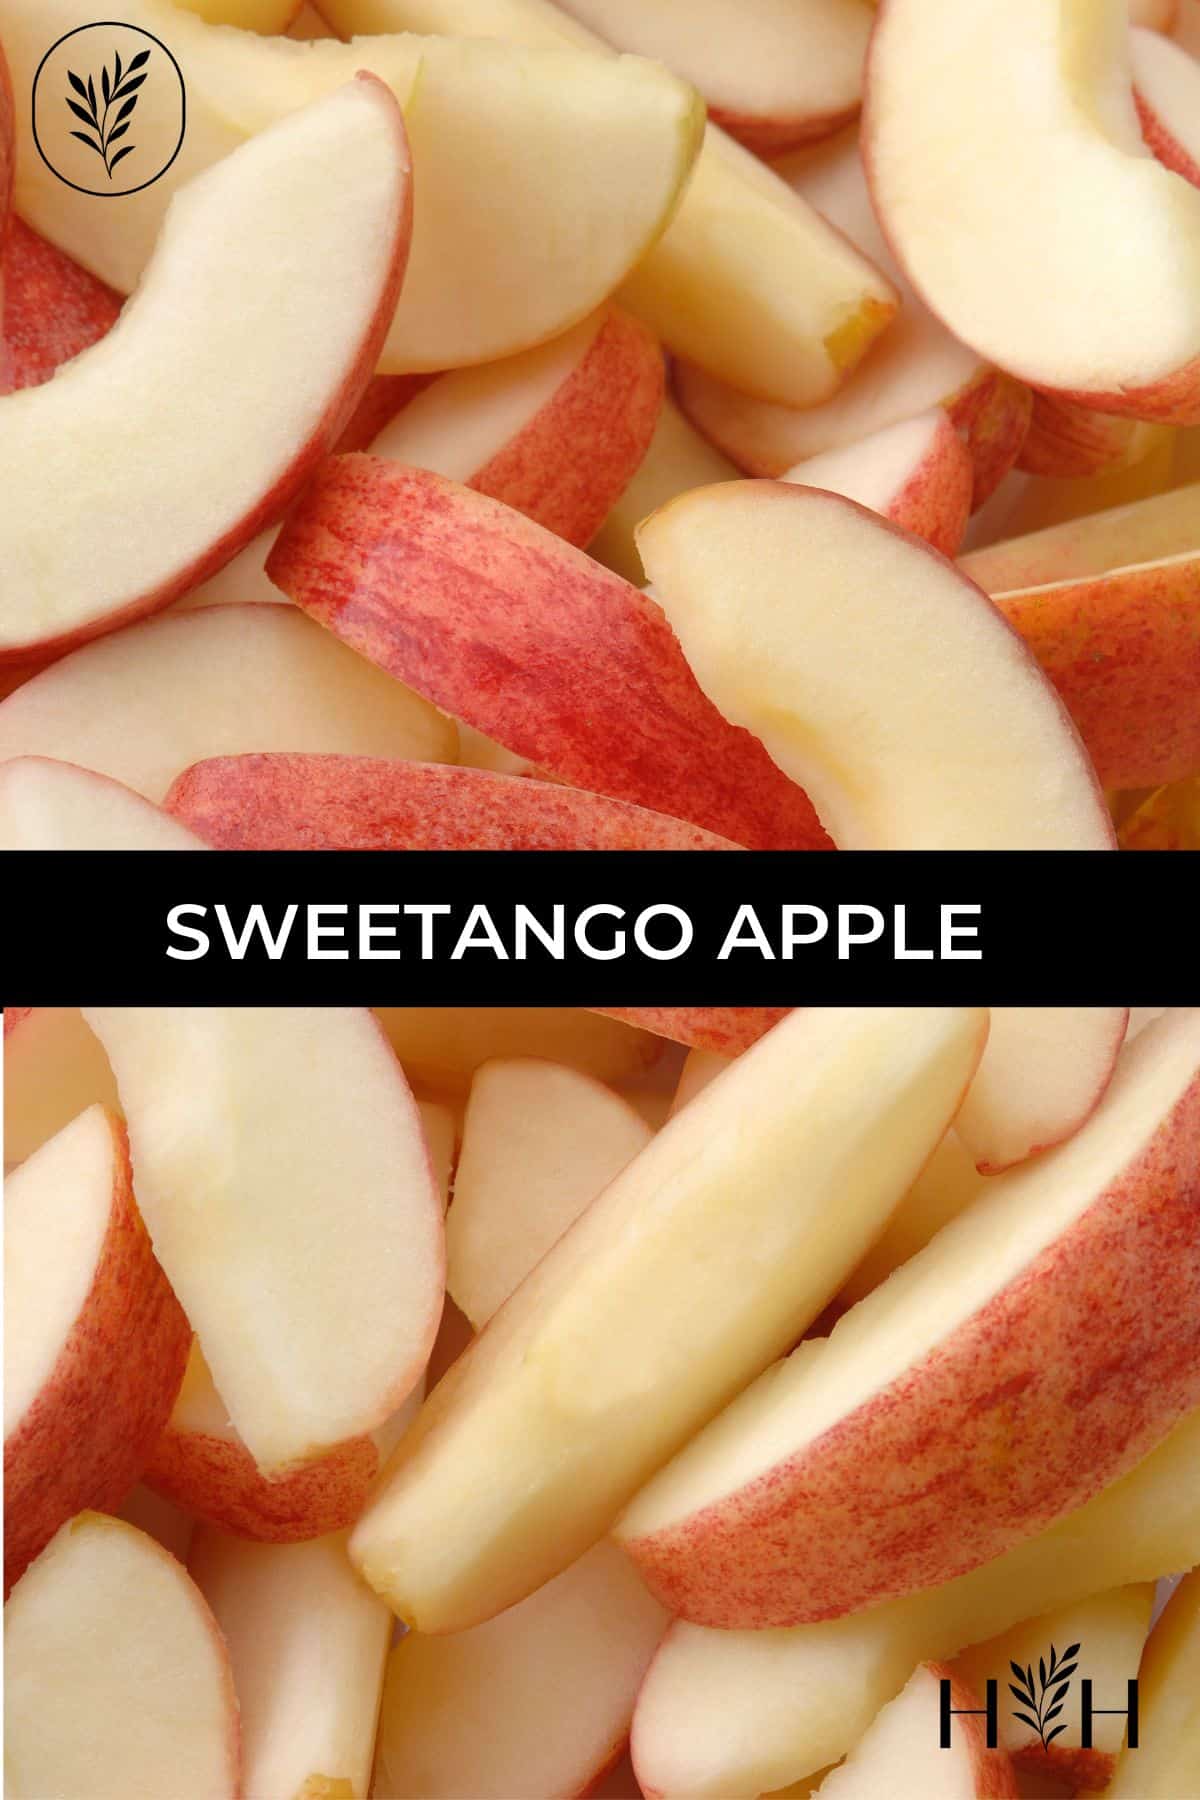 Sweetango apple via @home4theharvest